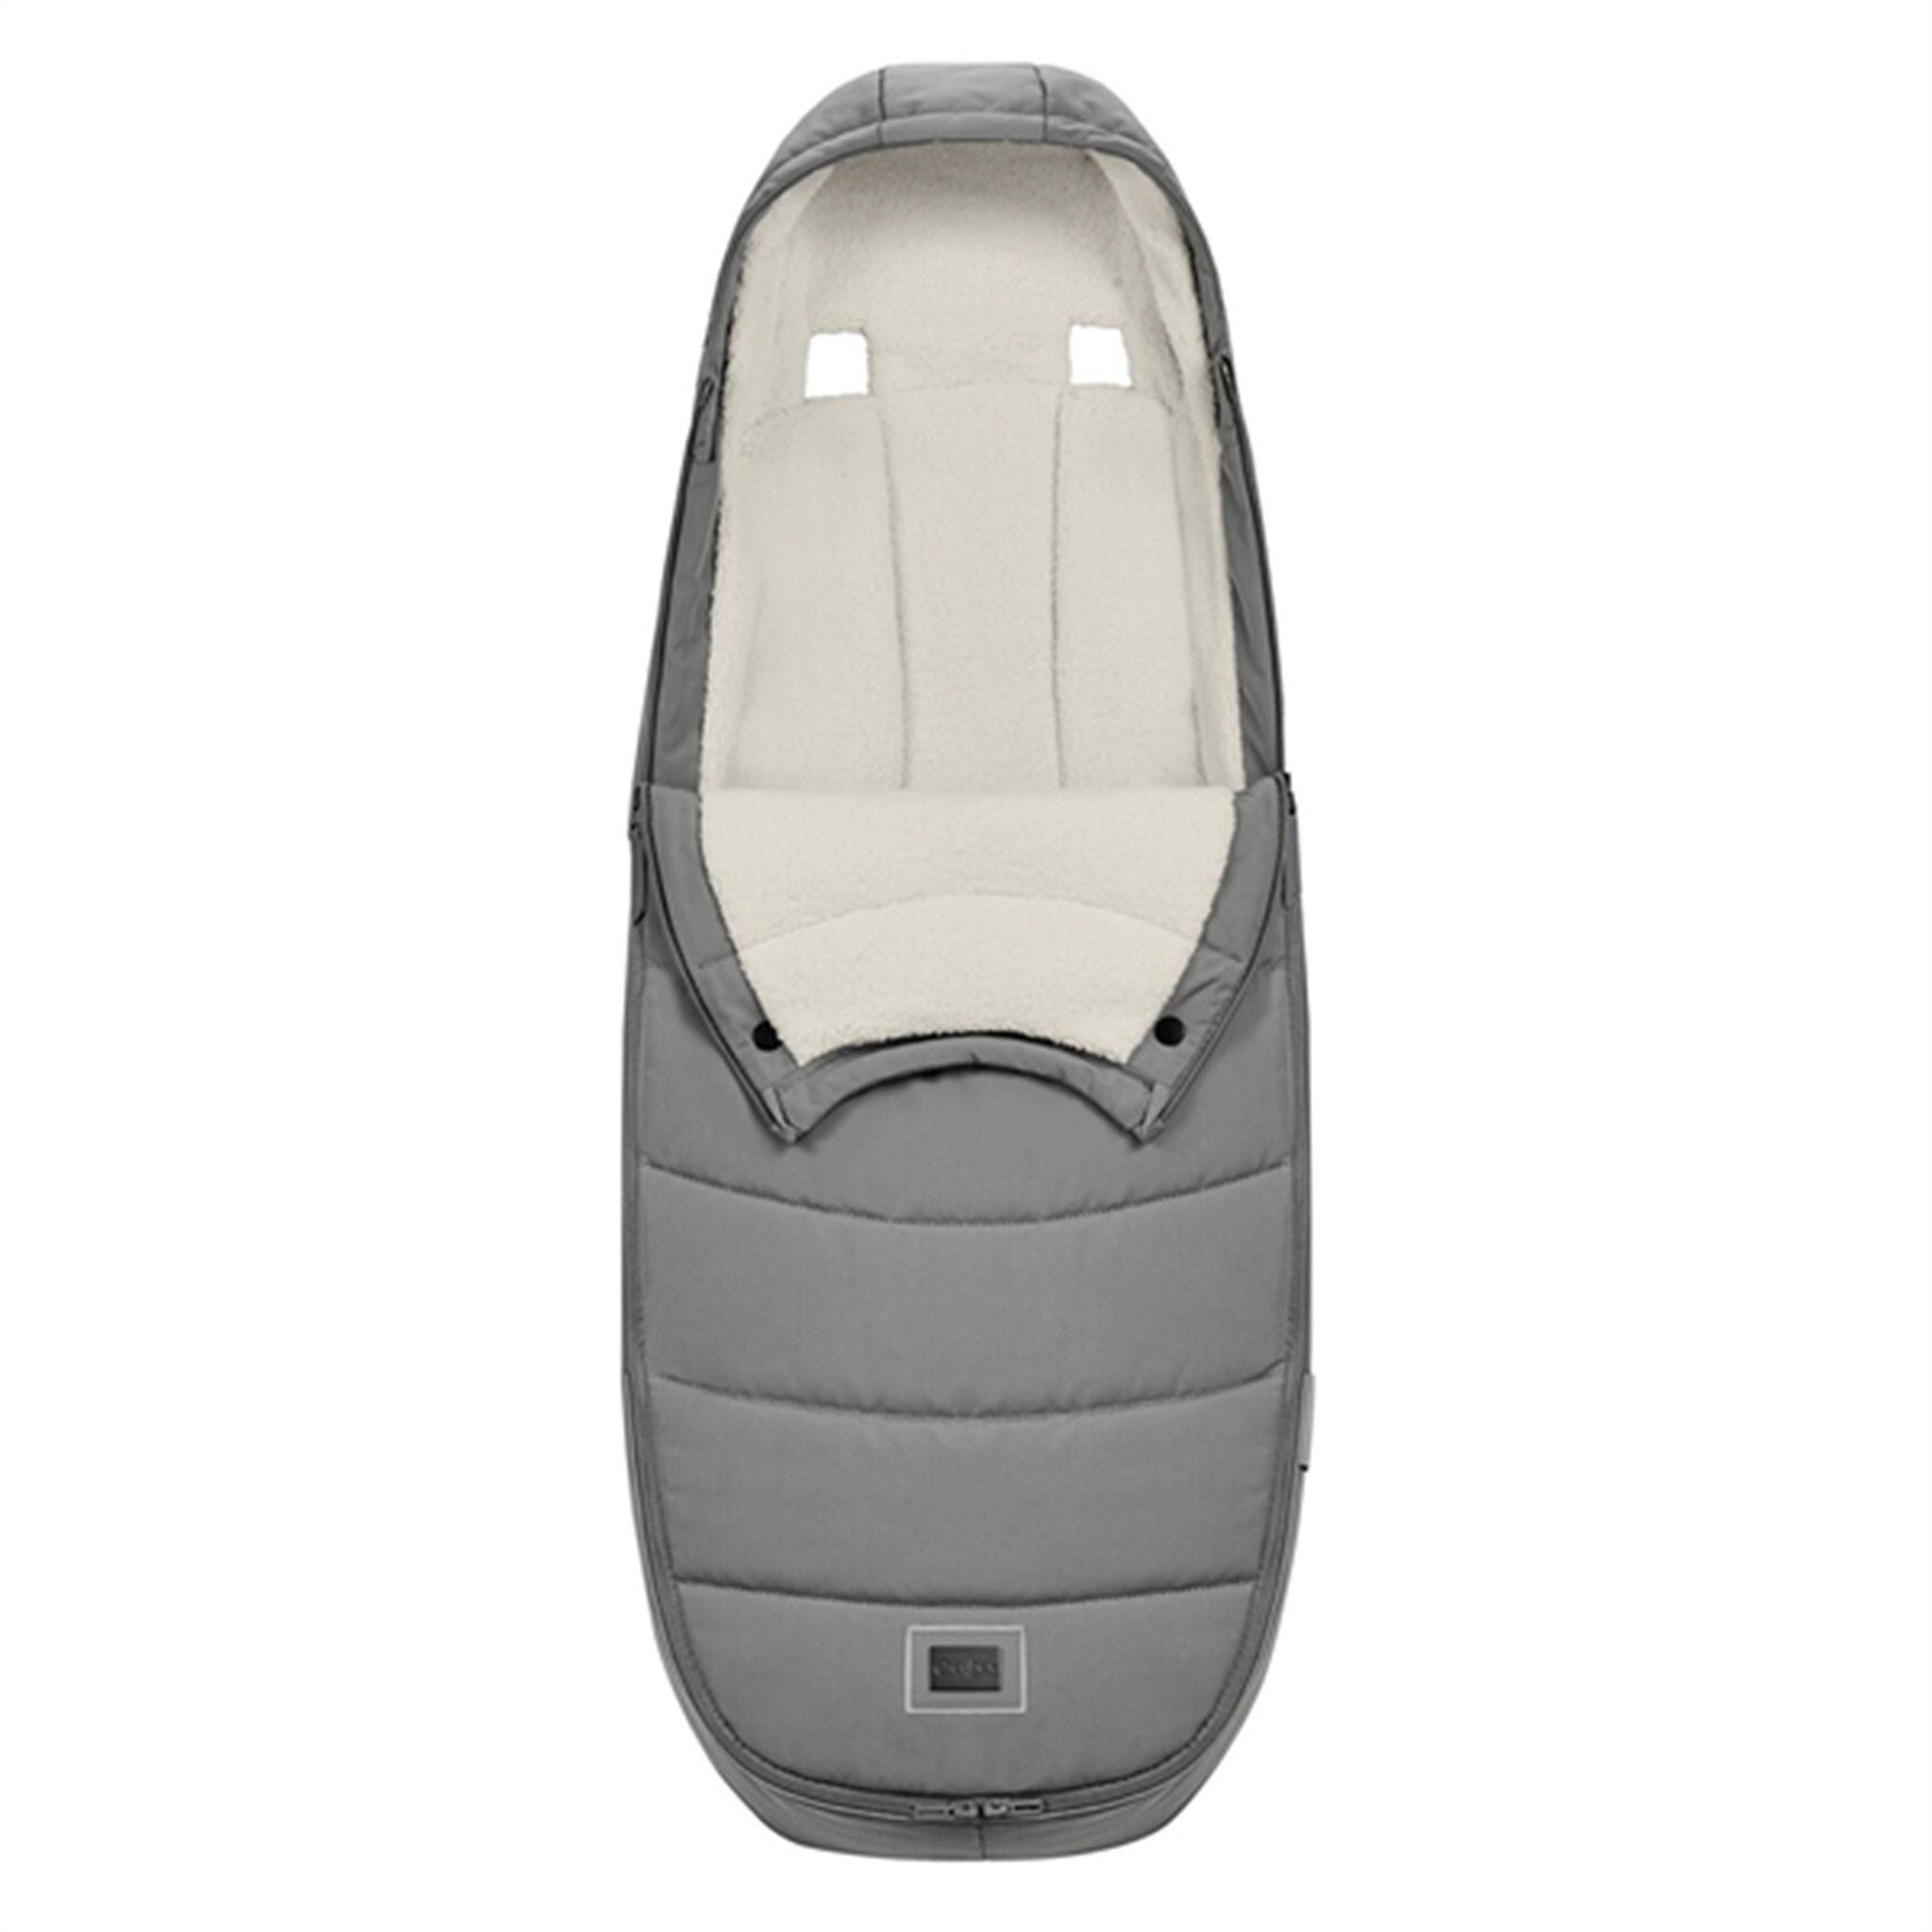 Cybex Platinum Kørepose Mirage Grey 3